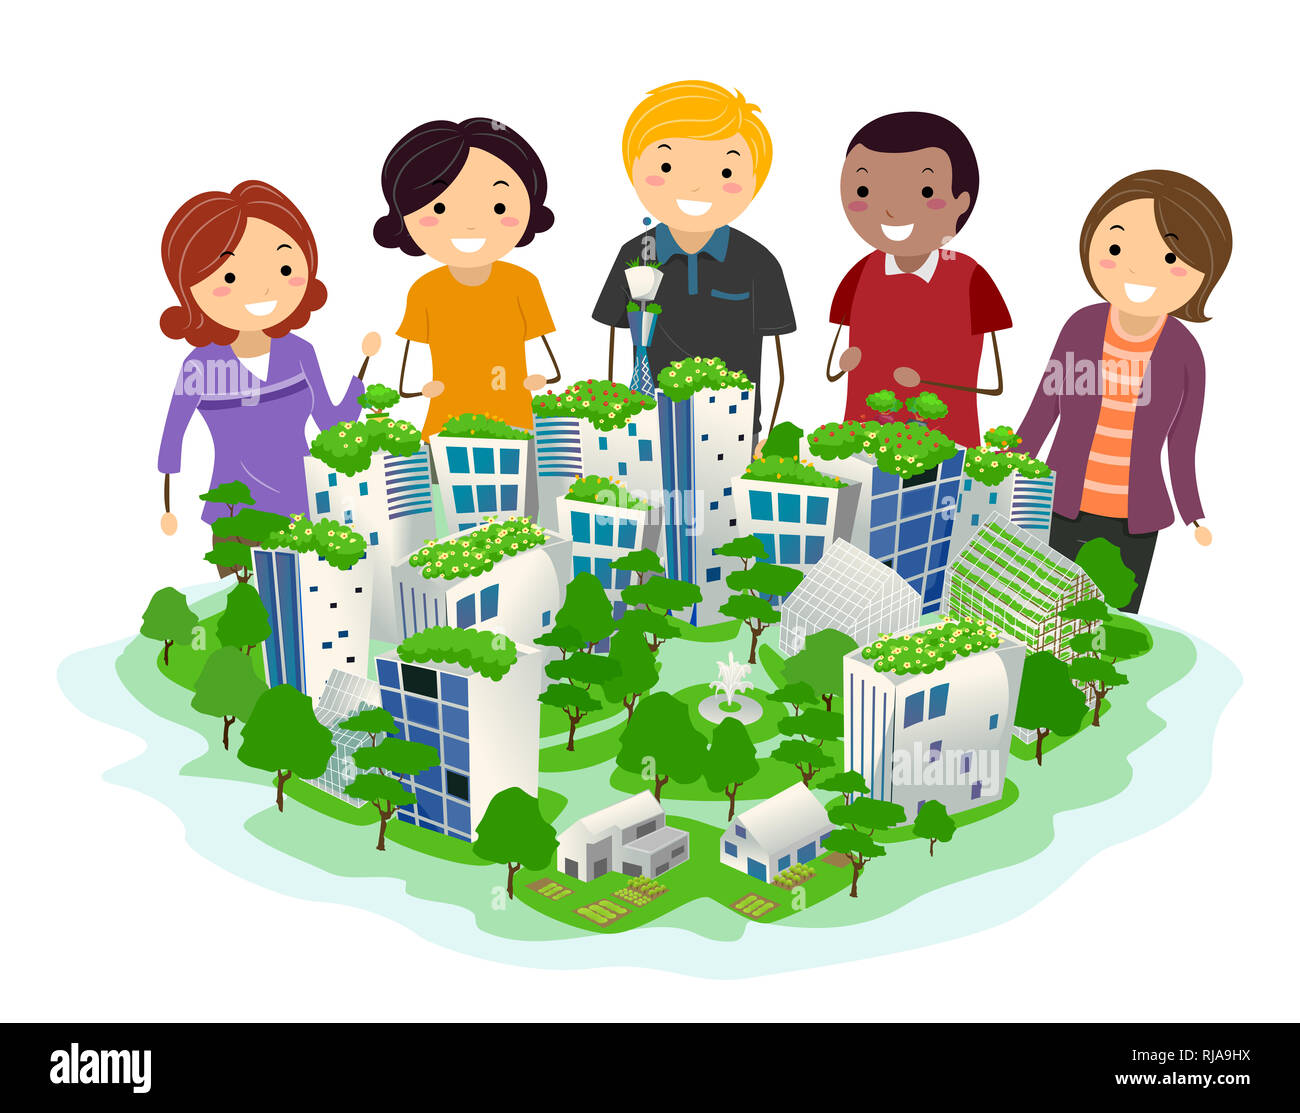 Illustration de personnes regardant une miniature d'une communauté verte avec des arbres et des plantes dans la ville Banque D'Images